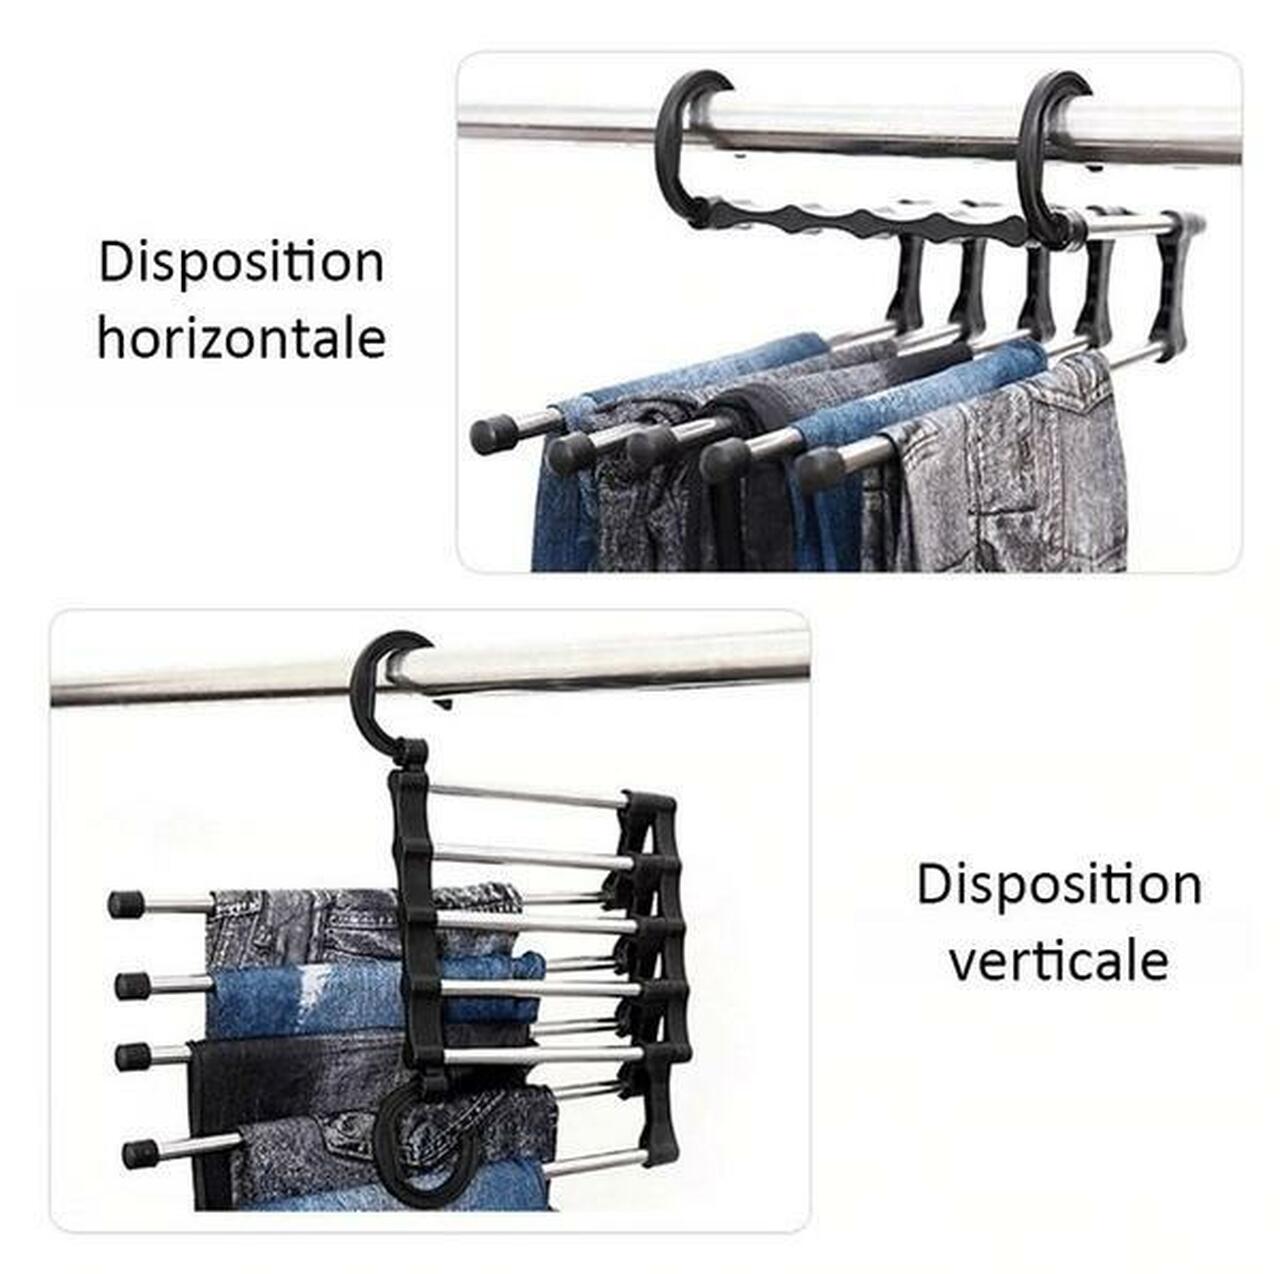 Abtonic Multifunctional Trouser Hangers